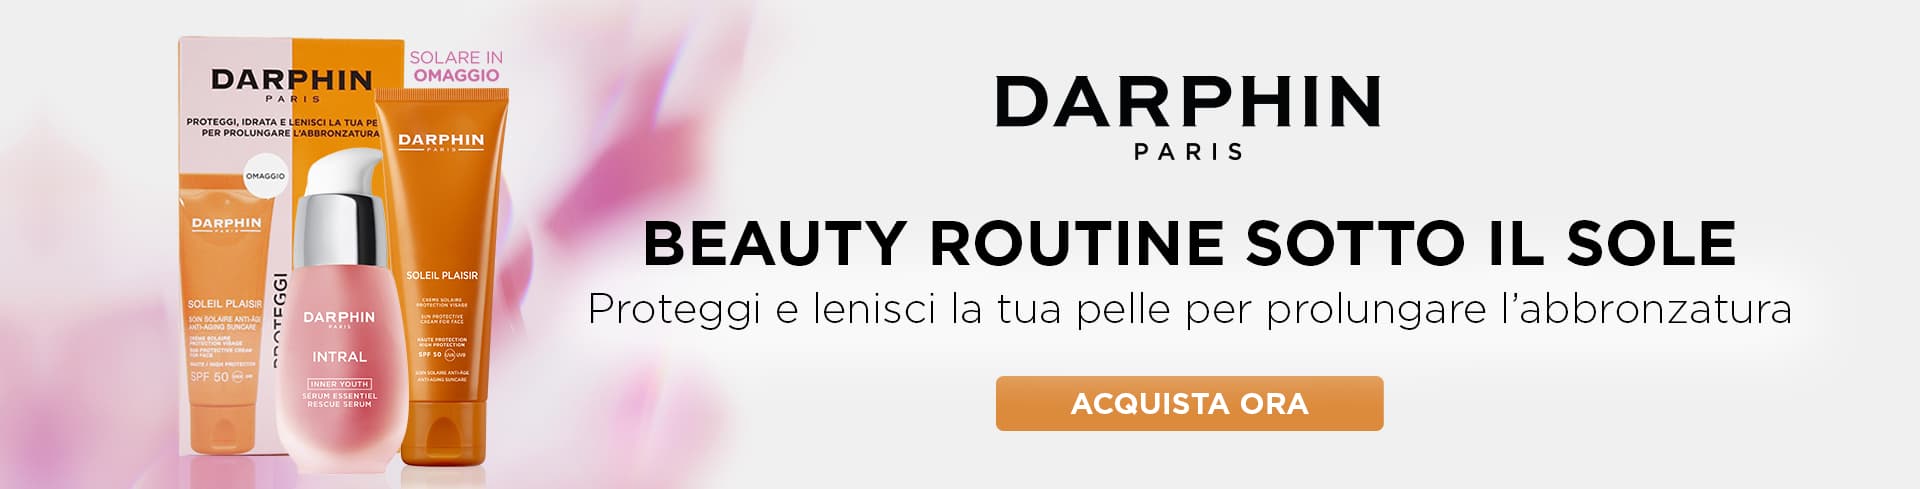 Darphin: Beauty Routine sotto il sole con il nuovo cofanetto Intral + Soleir Plaisir in omaggio!